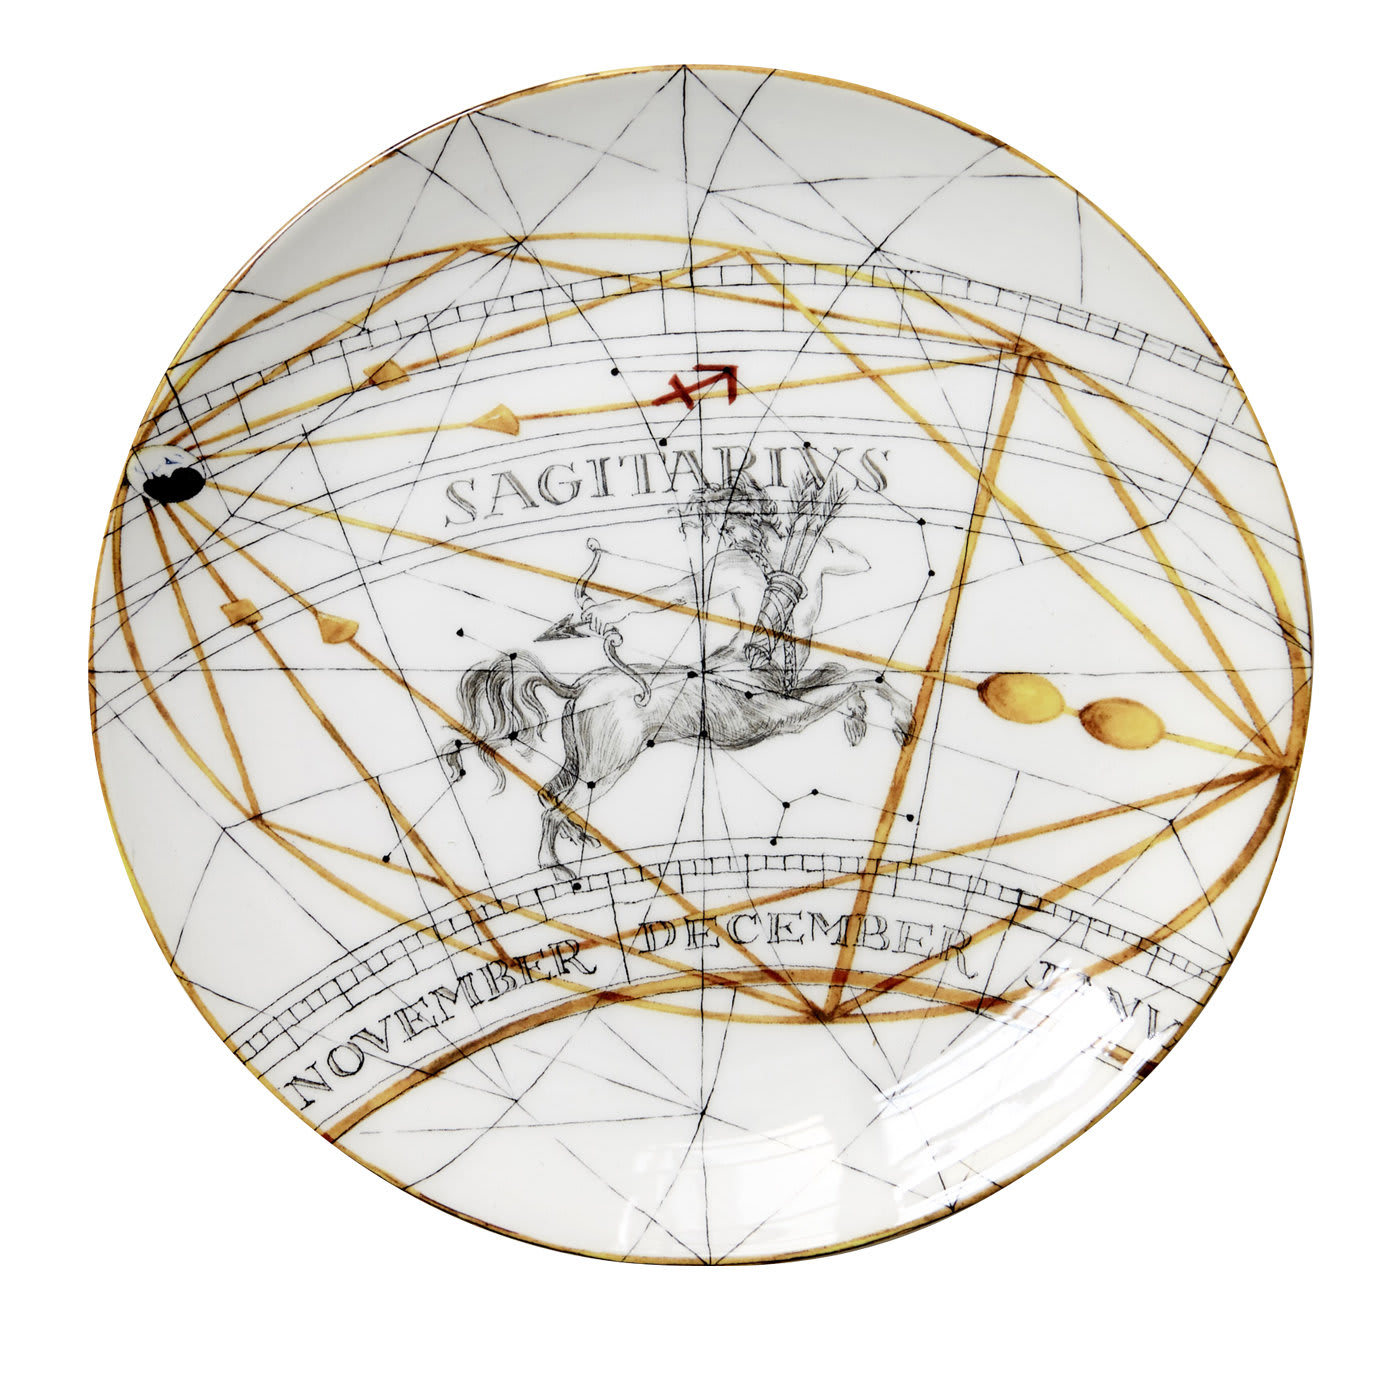 Zodiaco Sagittarius Dinner Plate - Laboratorio Paravicini